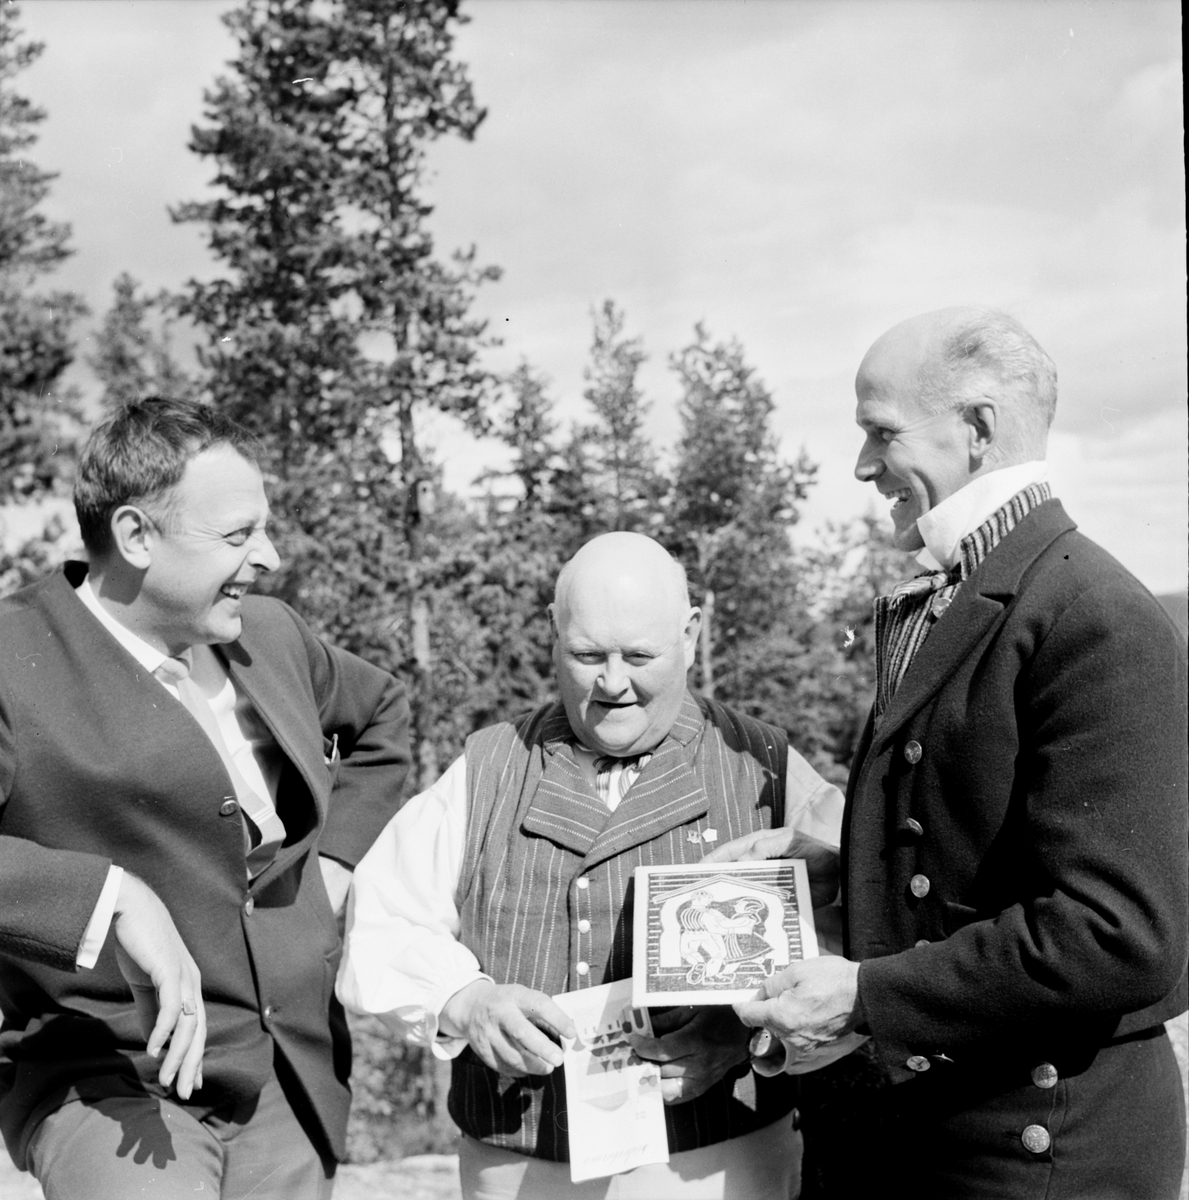 Landskapsleken,
Inform i Järvsö,
Öberg,Tjock-Anders,Lars Hansson,
4 Juli 1965
